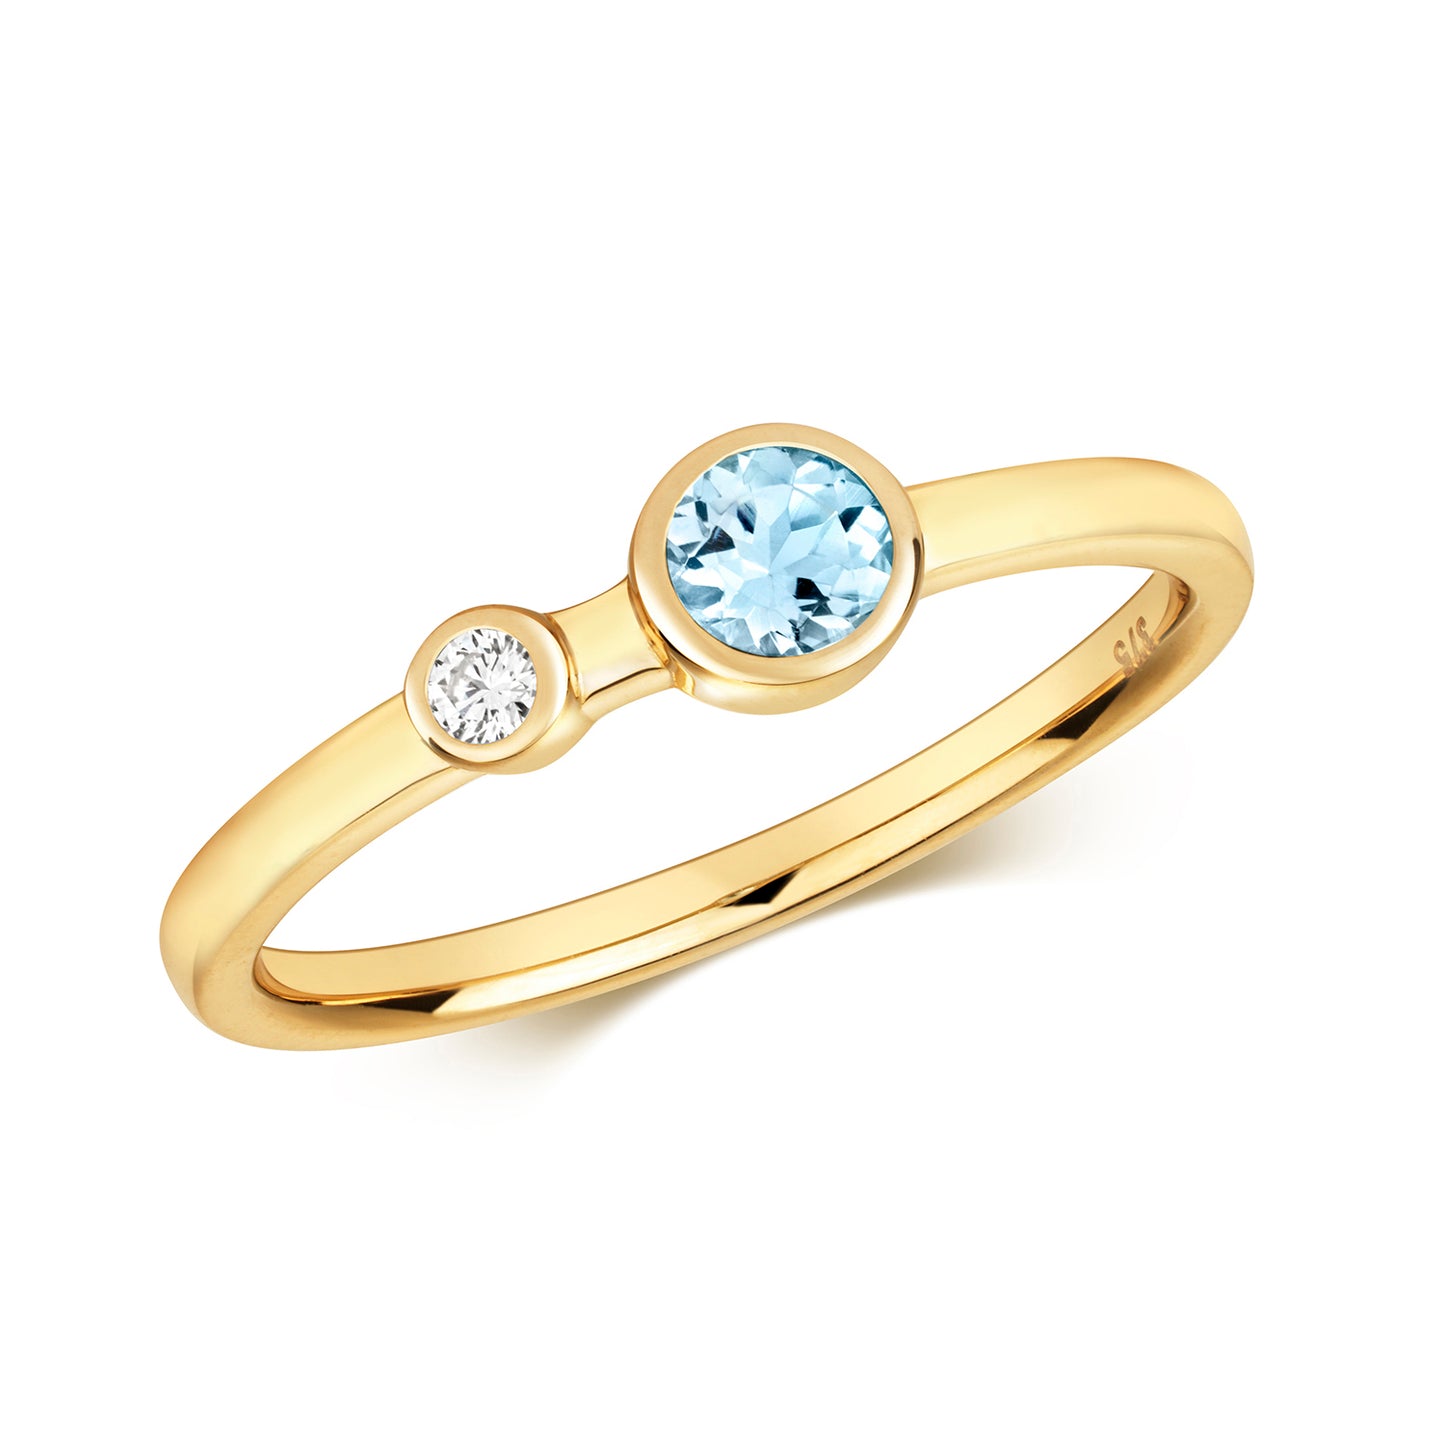 9ct Yellow Gold Aquamarine and Diamond Ring, Ring Sizes J to Q (492)